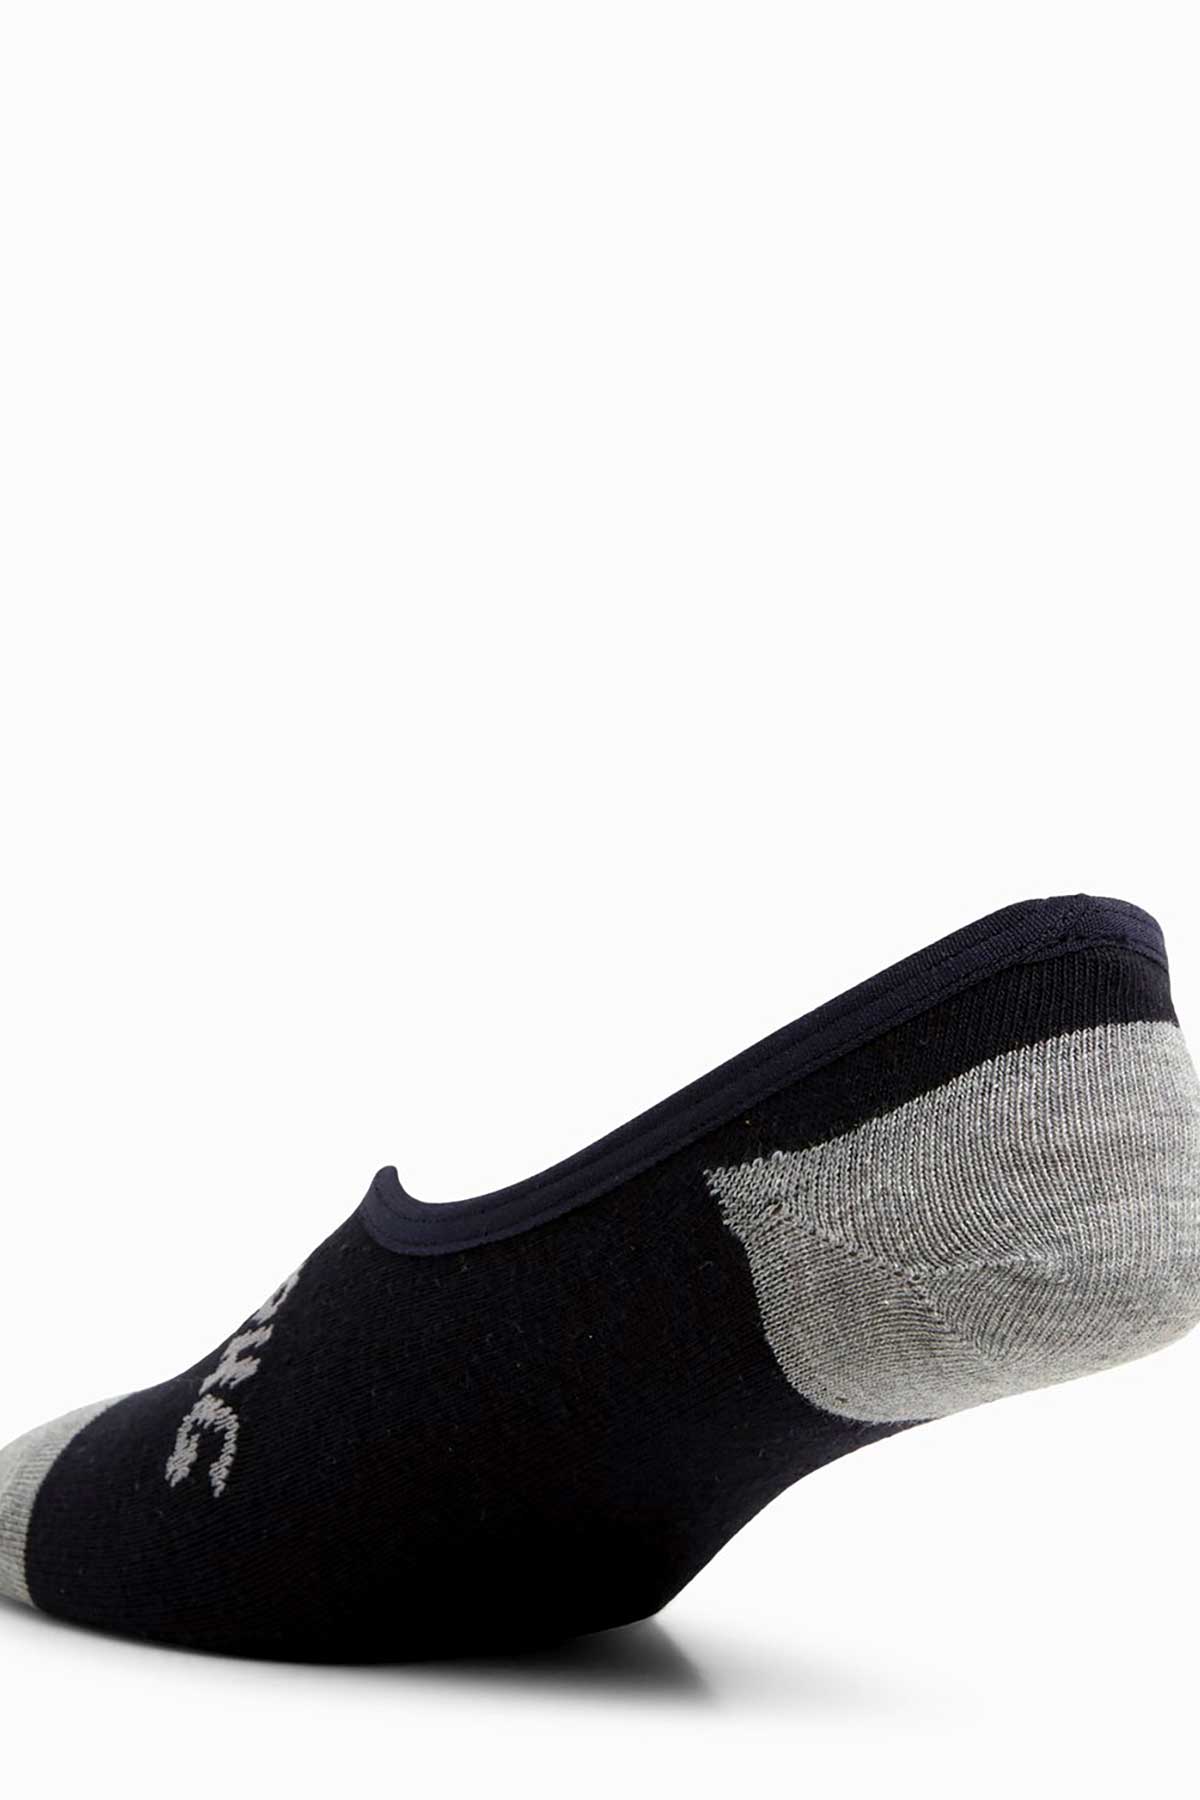 Billabong Invisible Socks 5 Pack, Back View Black and Grey.